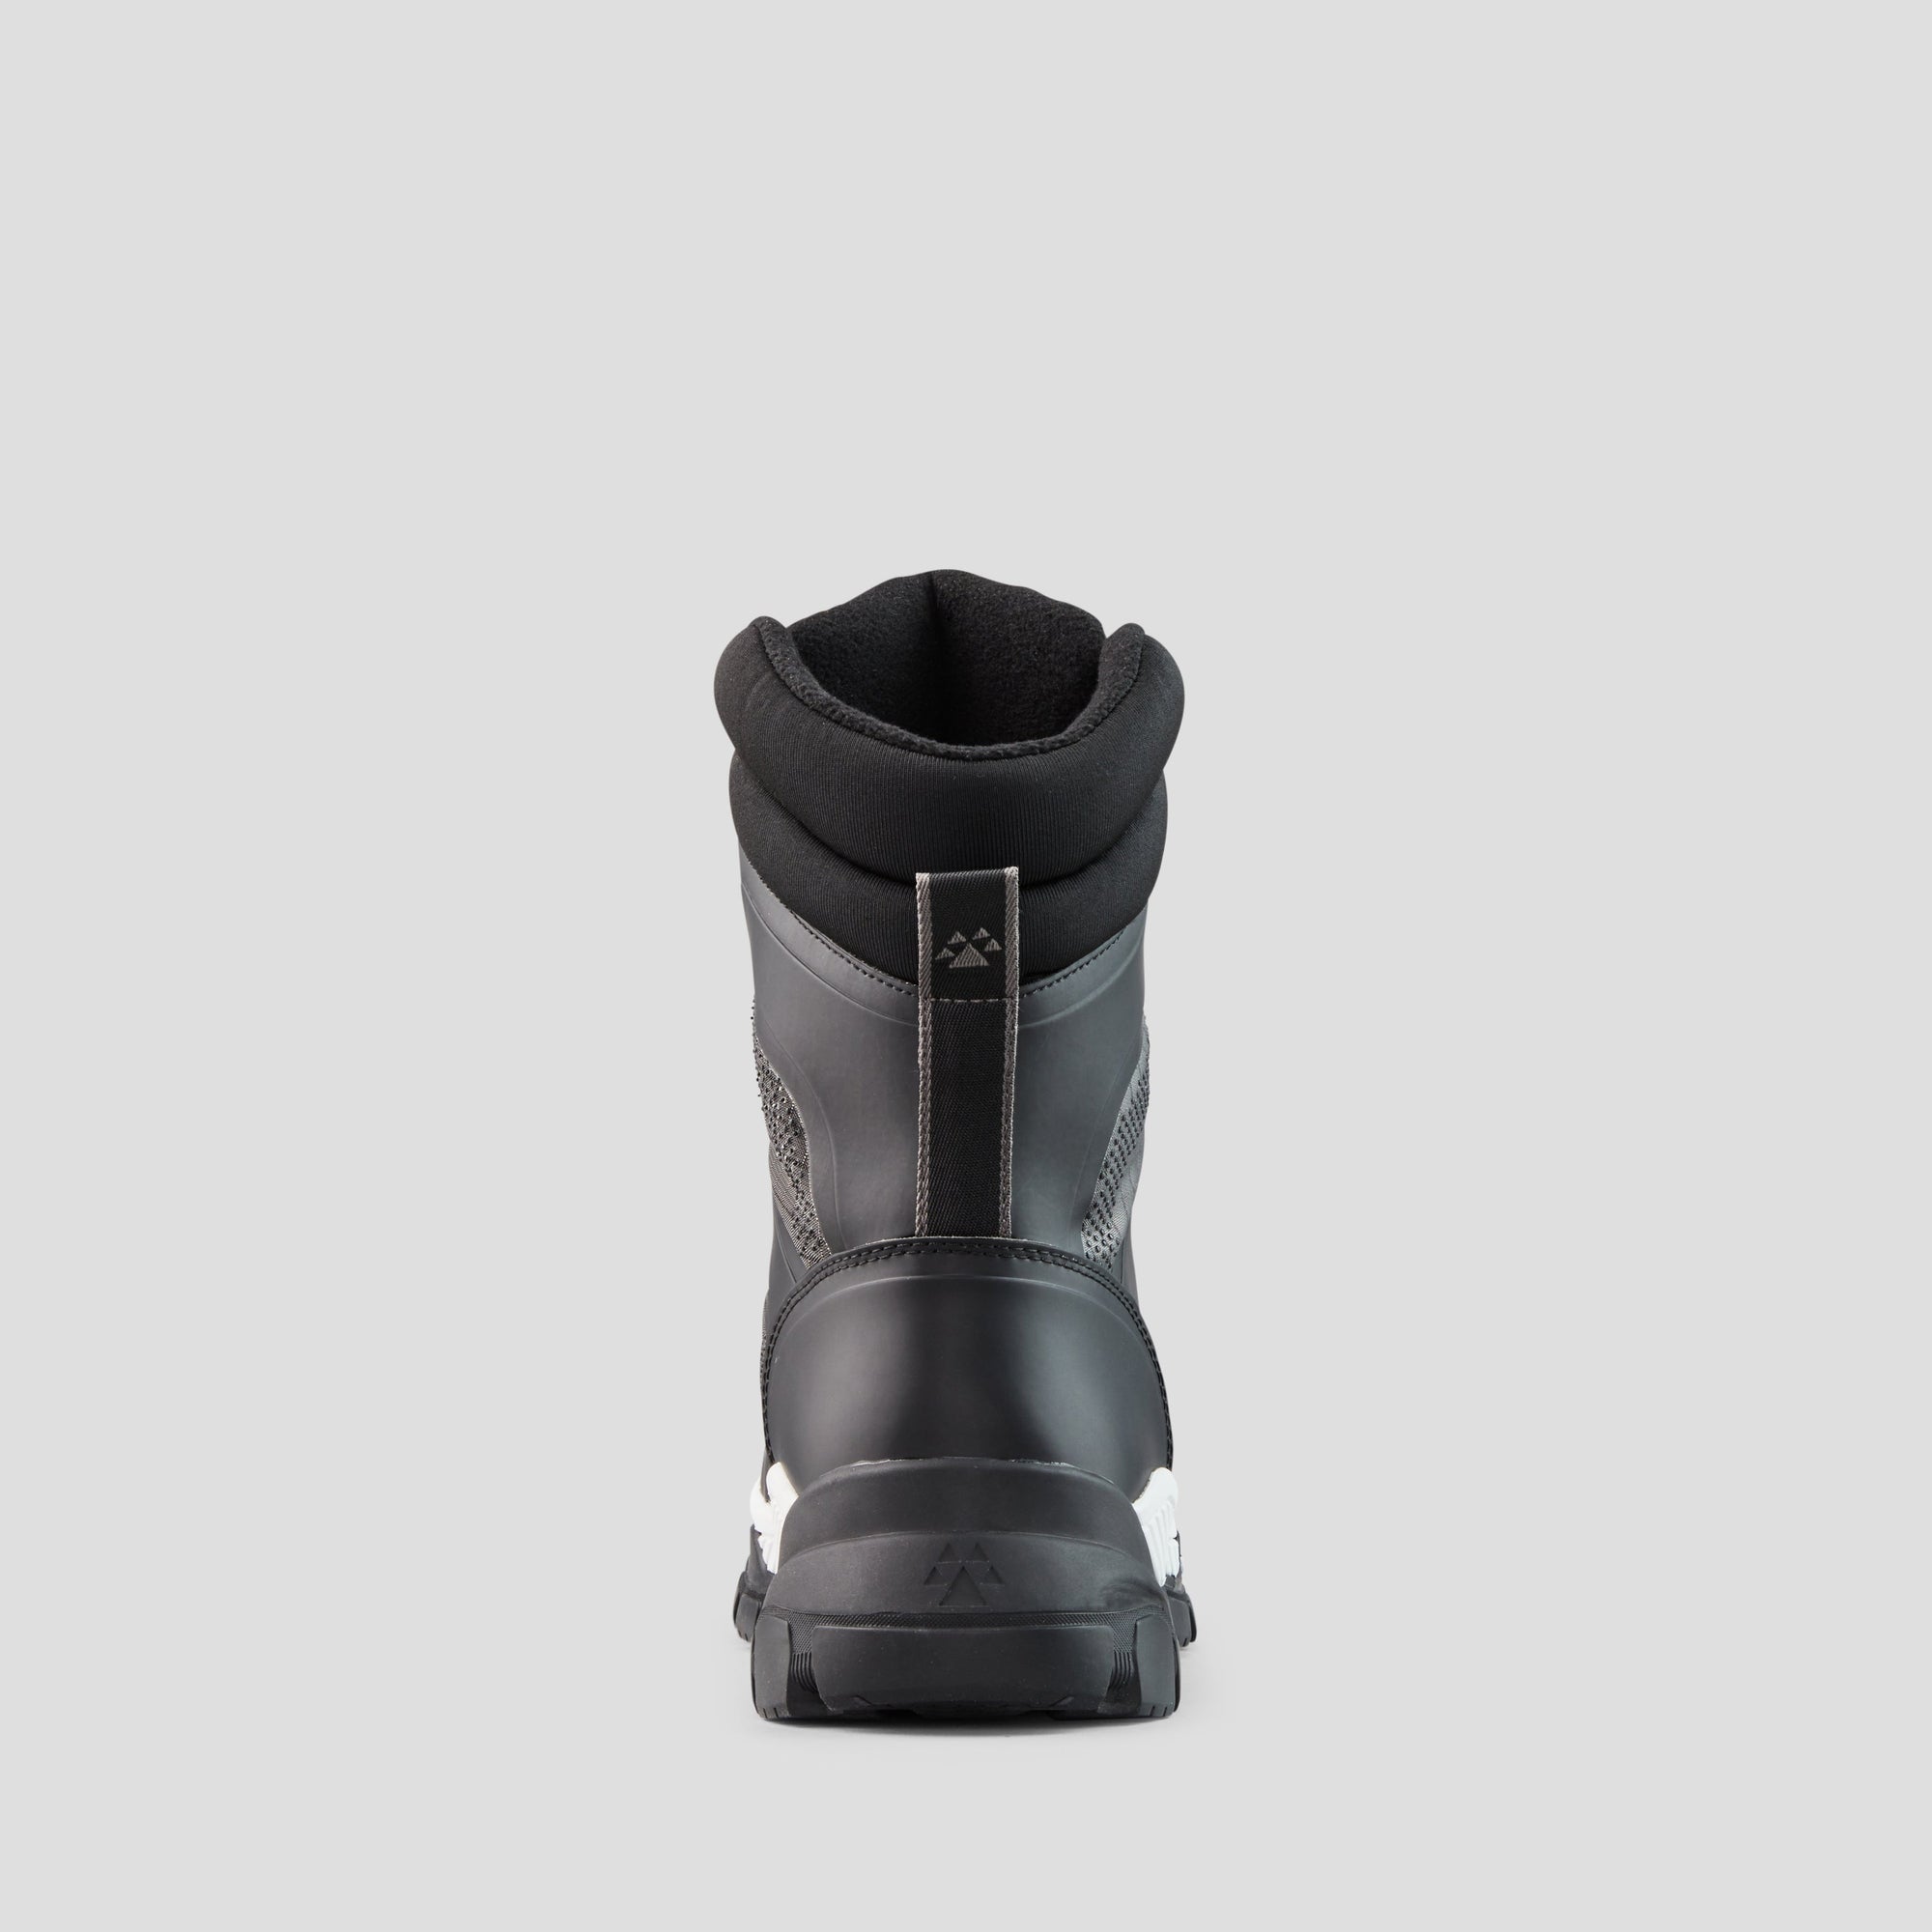 Ultima - Botte d'hiver imperméable en nylon avec PrimaLoft® et semelles de Michelin - Colour Black